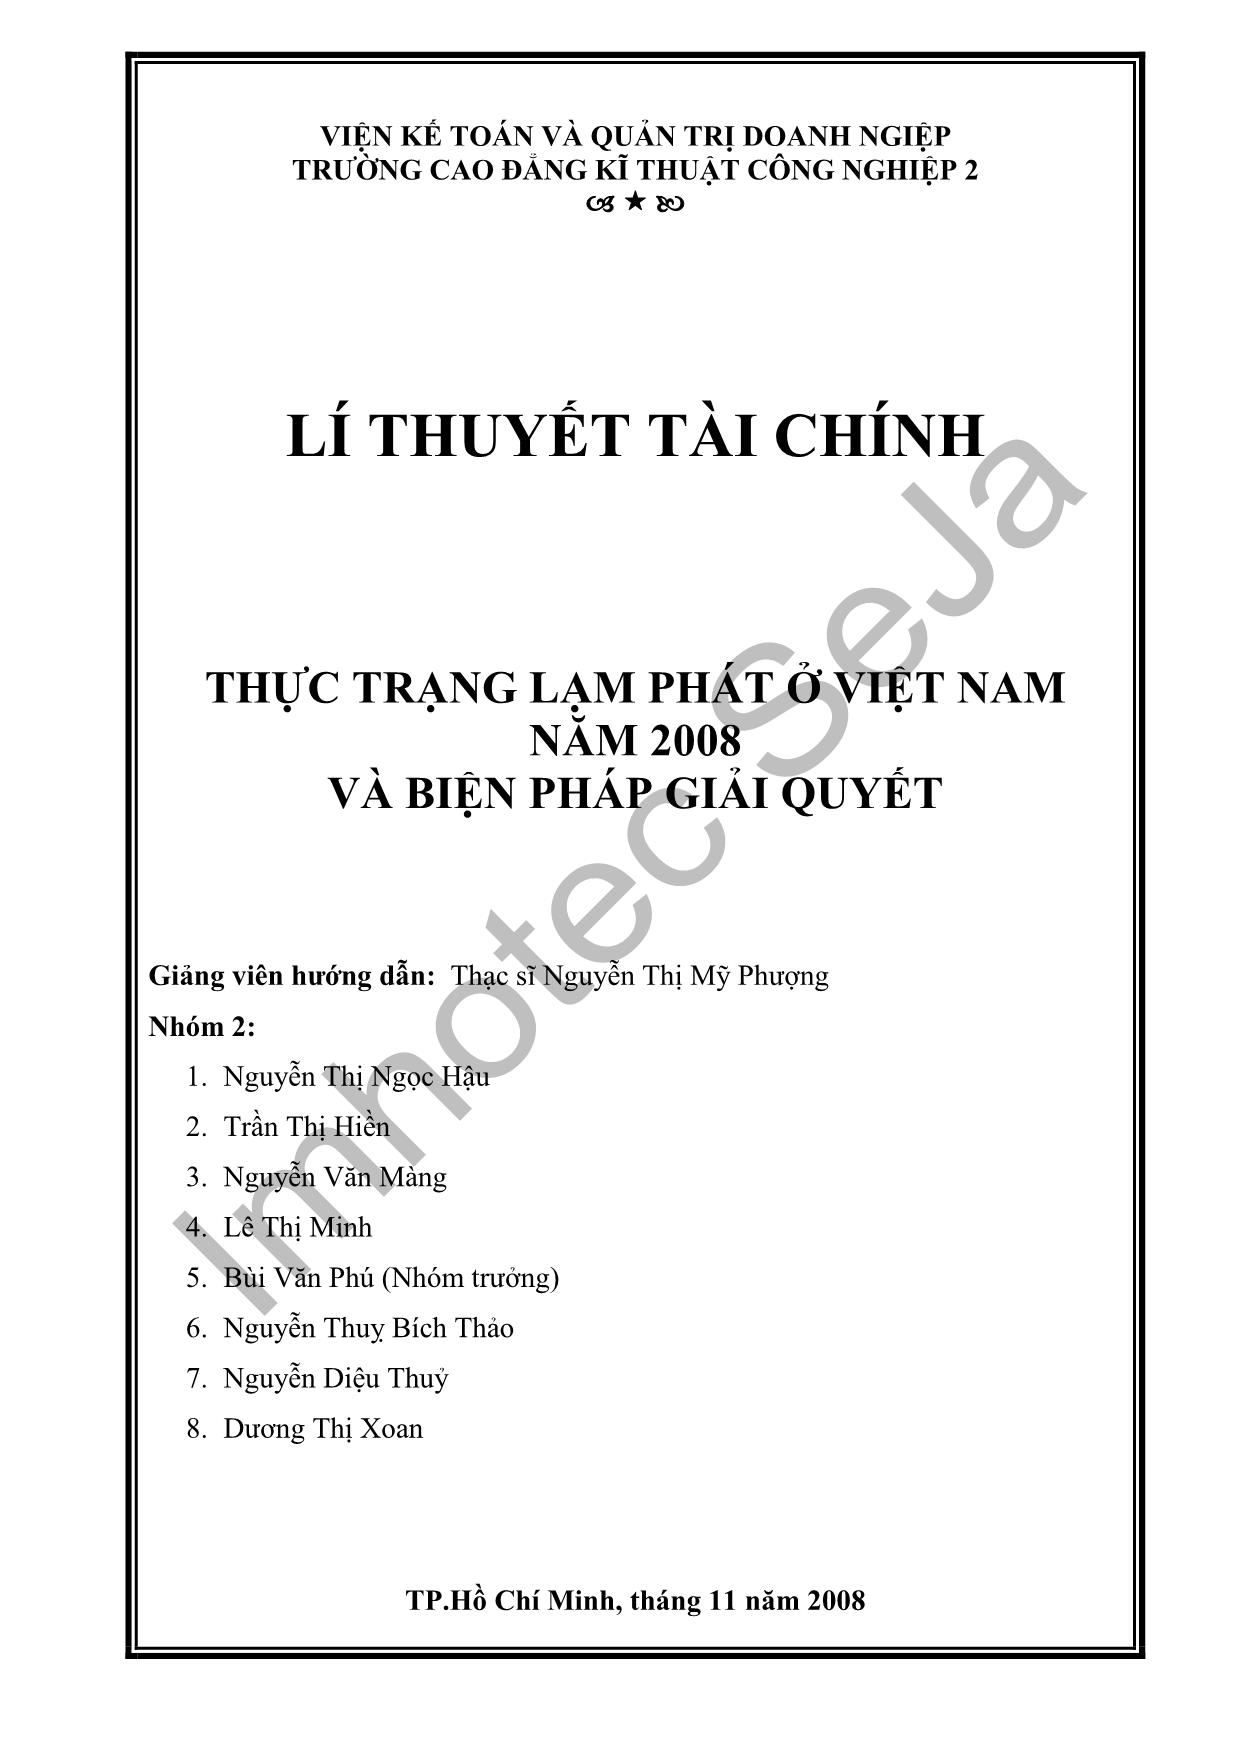 Đề tài Thực trạng lạm phát ở Việt Nam năm 2008 và biện pháp giải quyết trang 1